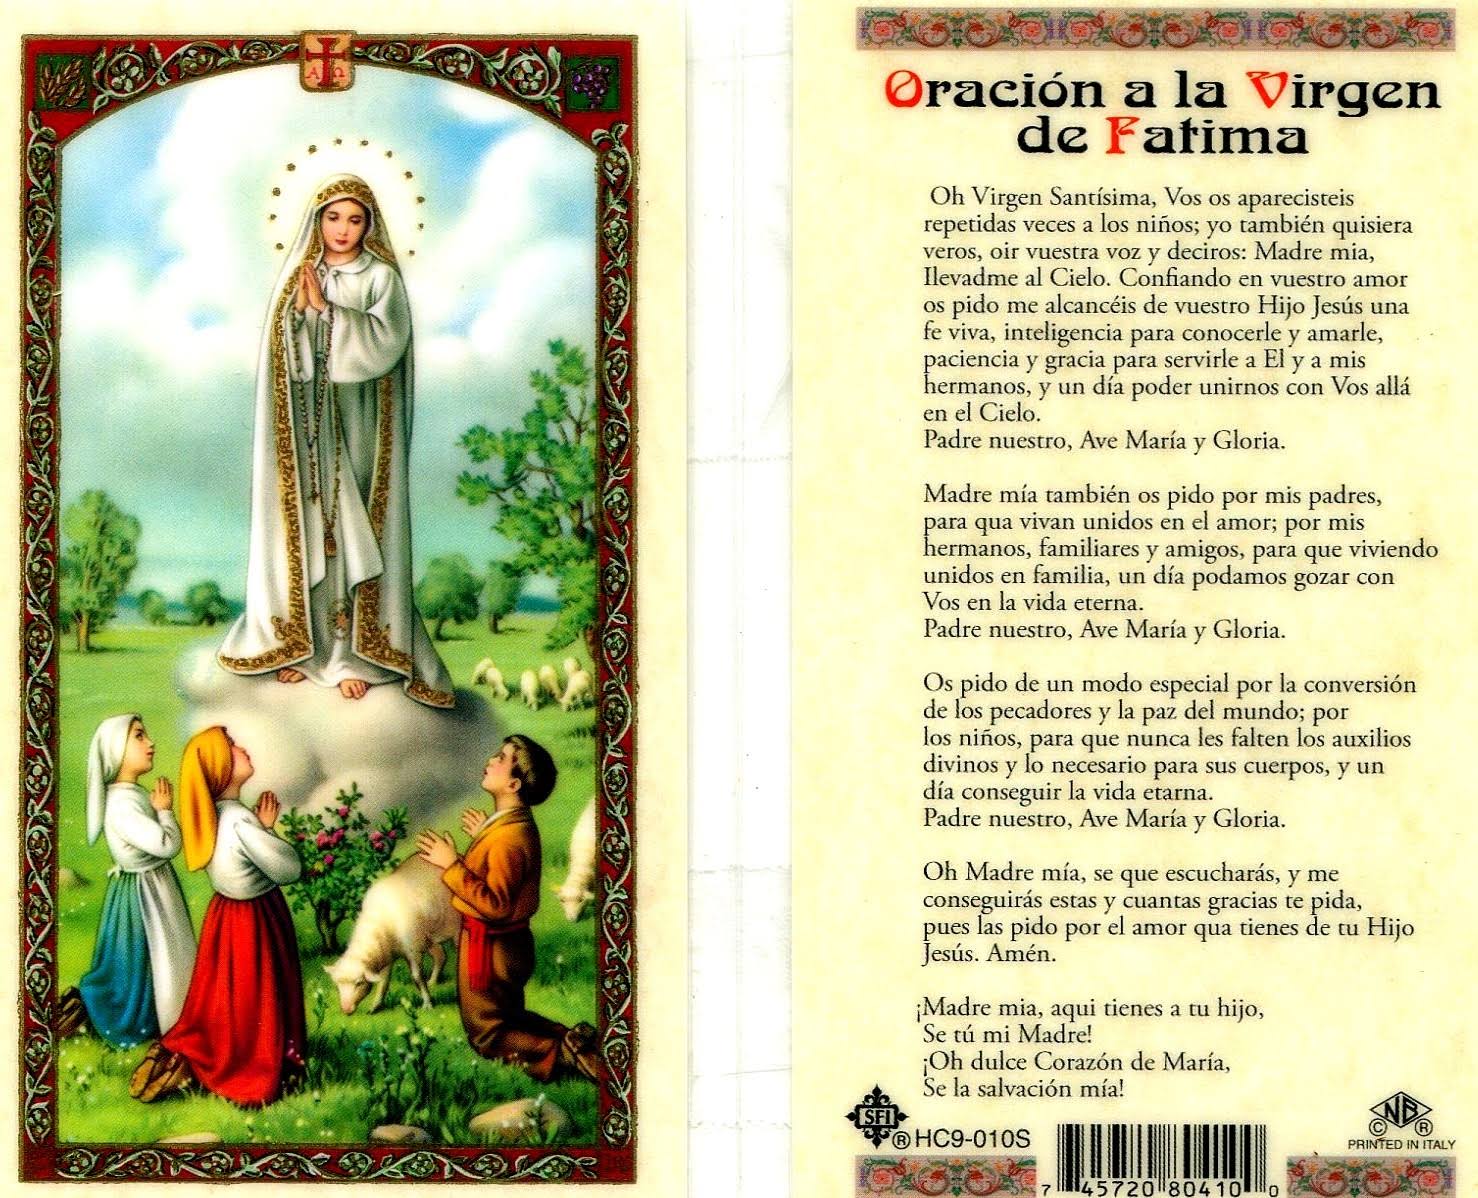 Spanish Oracion A La Virgen de Fatima Card - Item B010S - Laminated Prayer Card